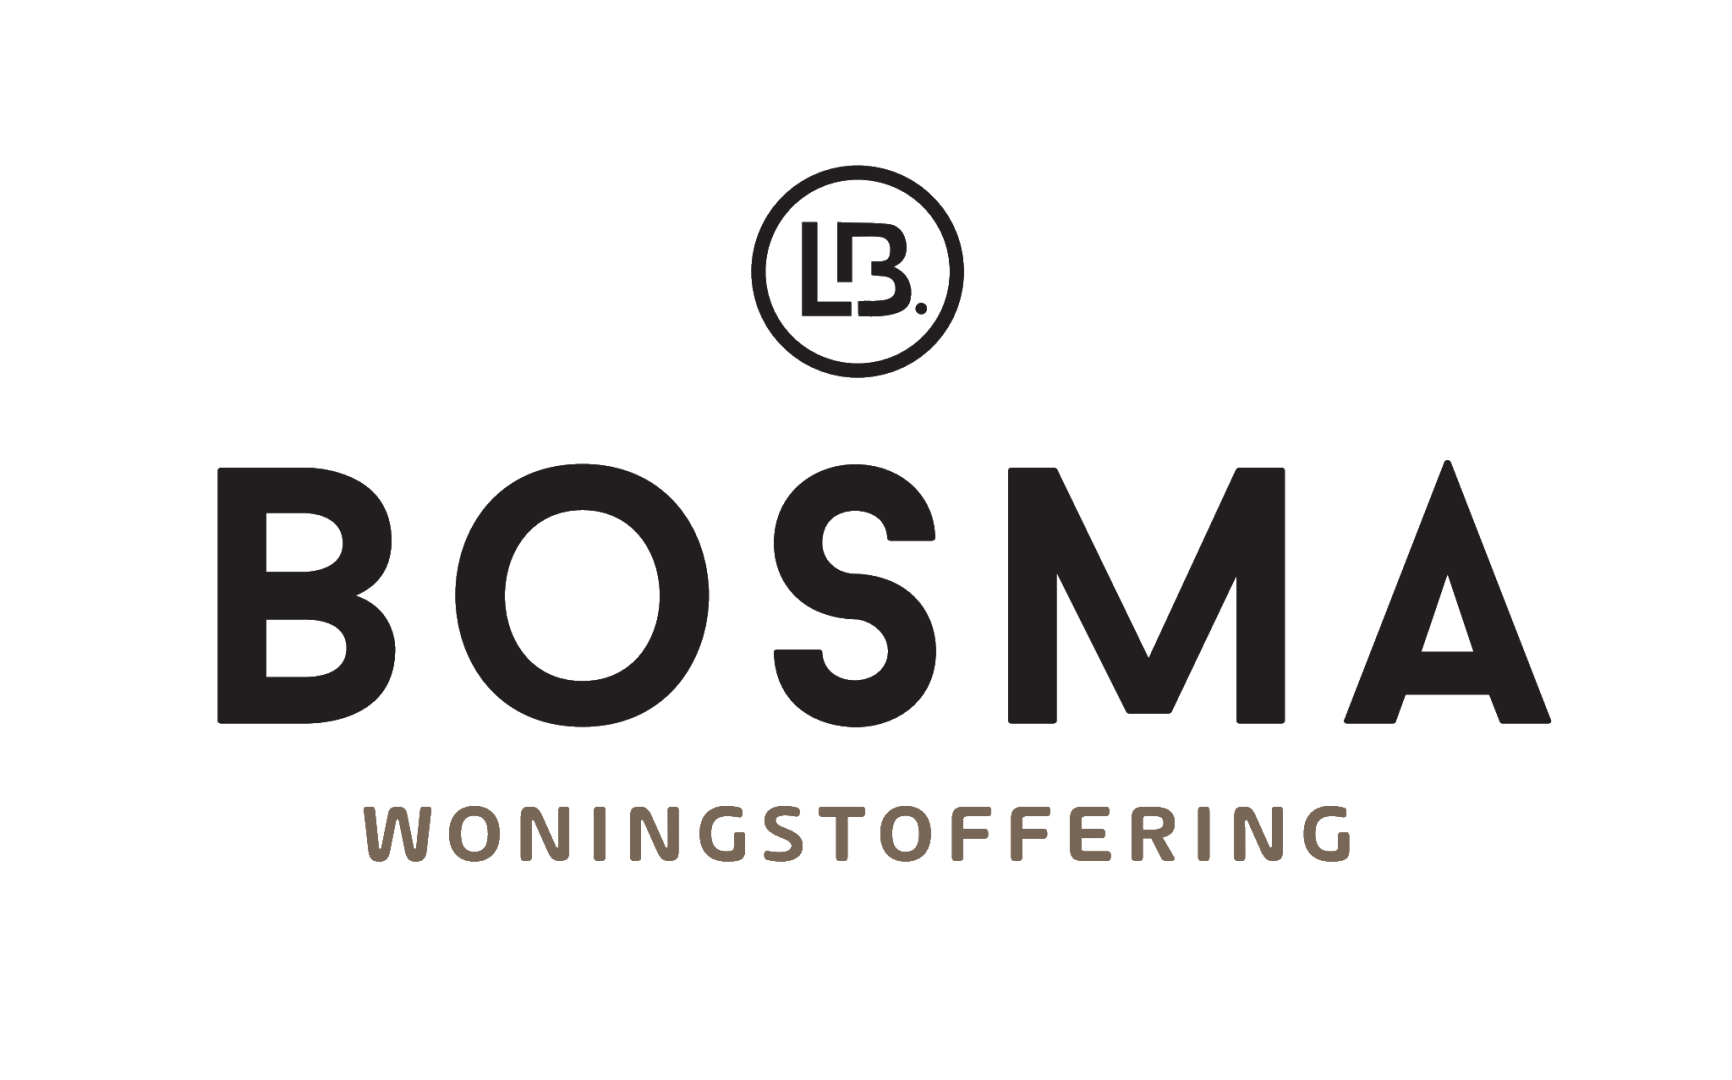 Bosma Woningstoffering logo